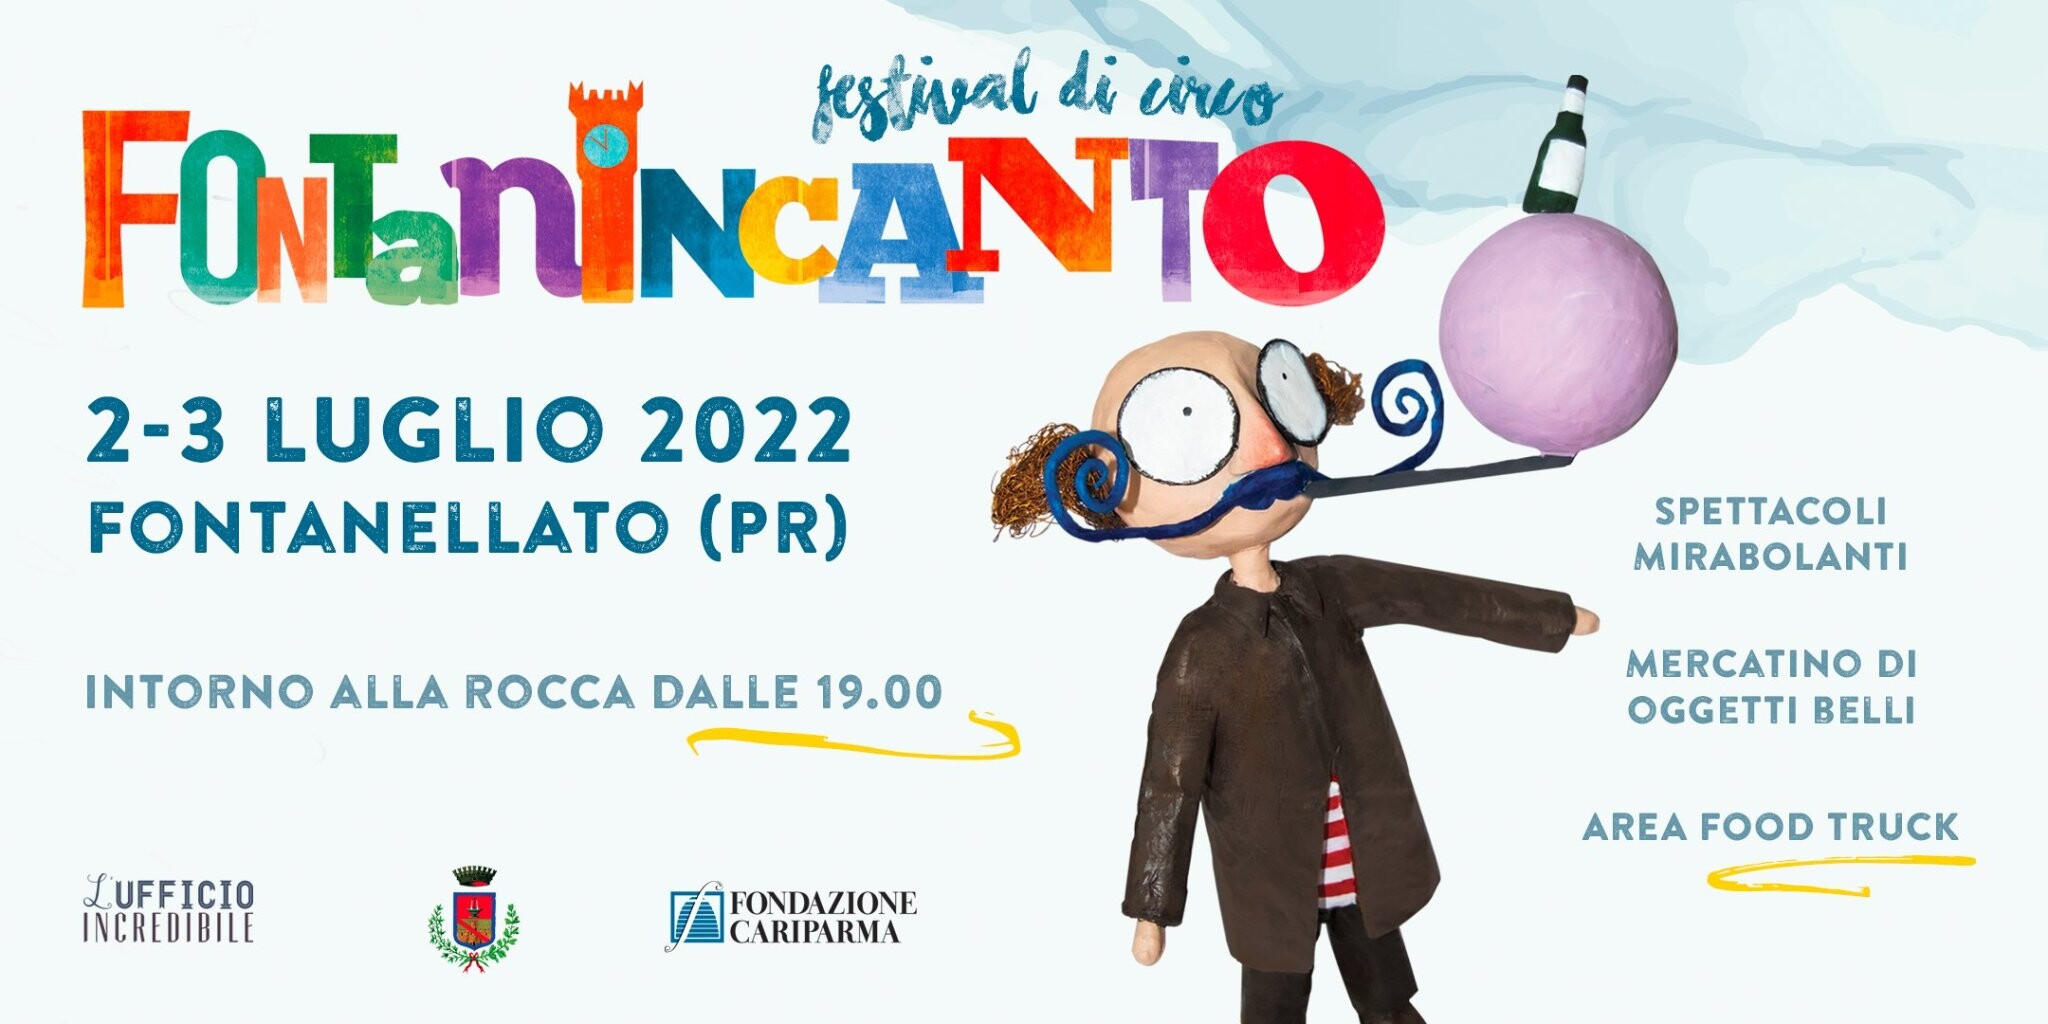 Fontanincanto - festival internazionale di circo contemporaneo a Fontanellato